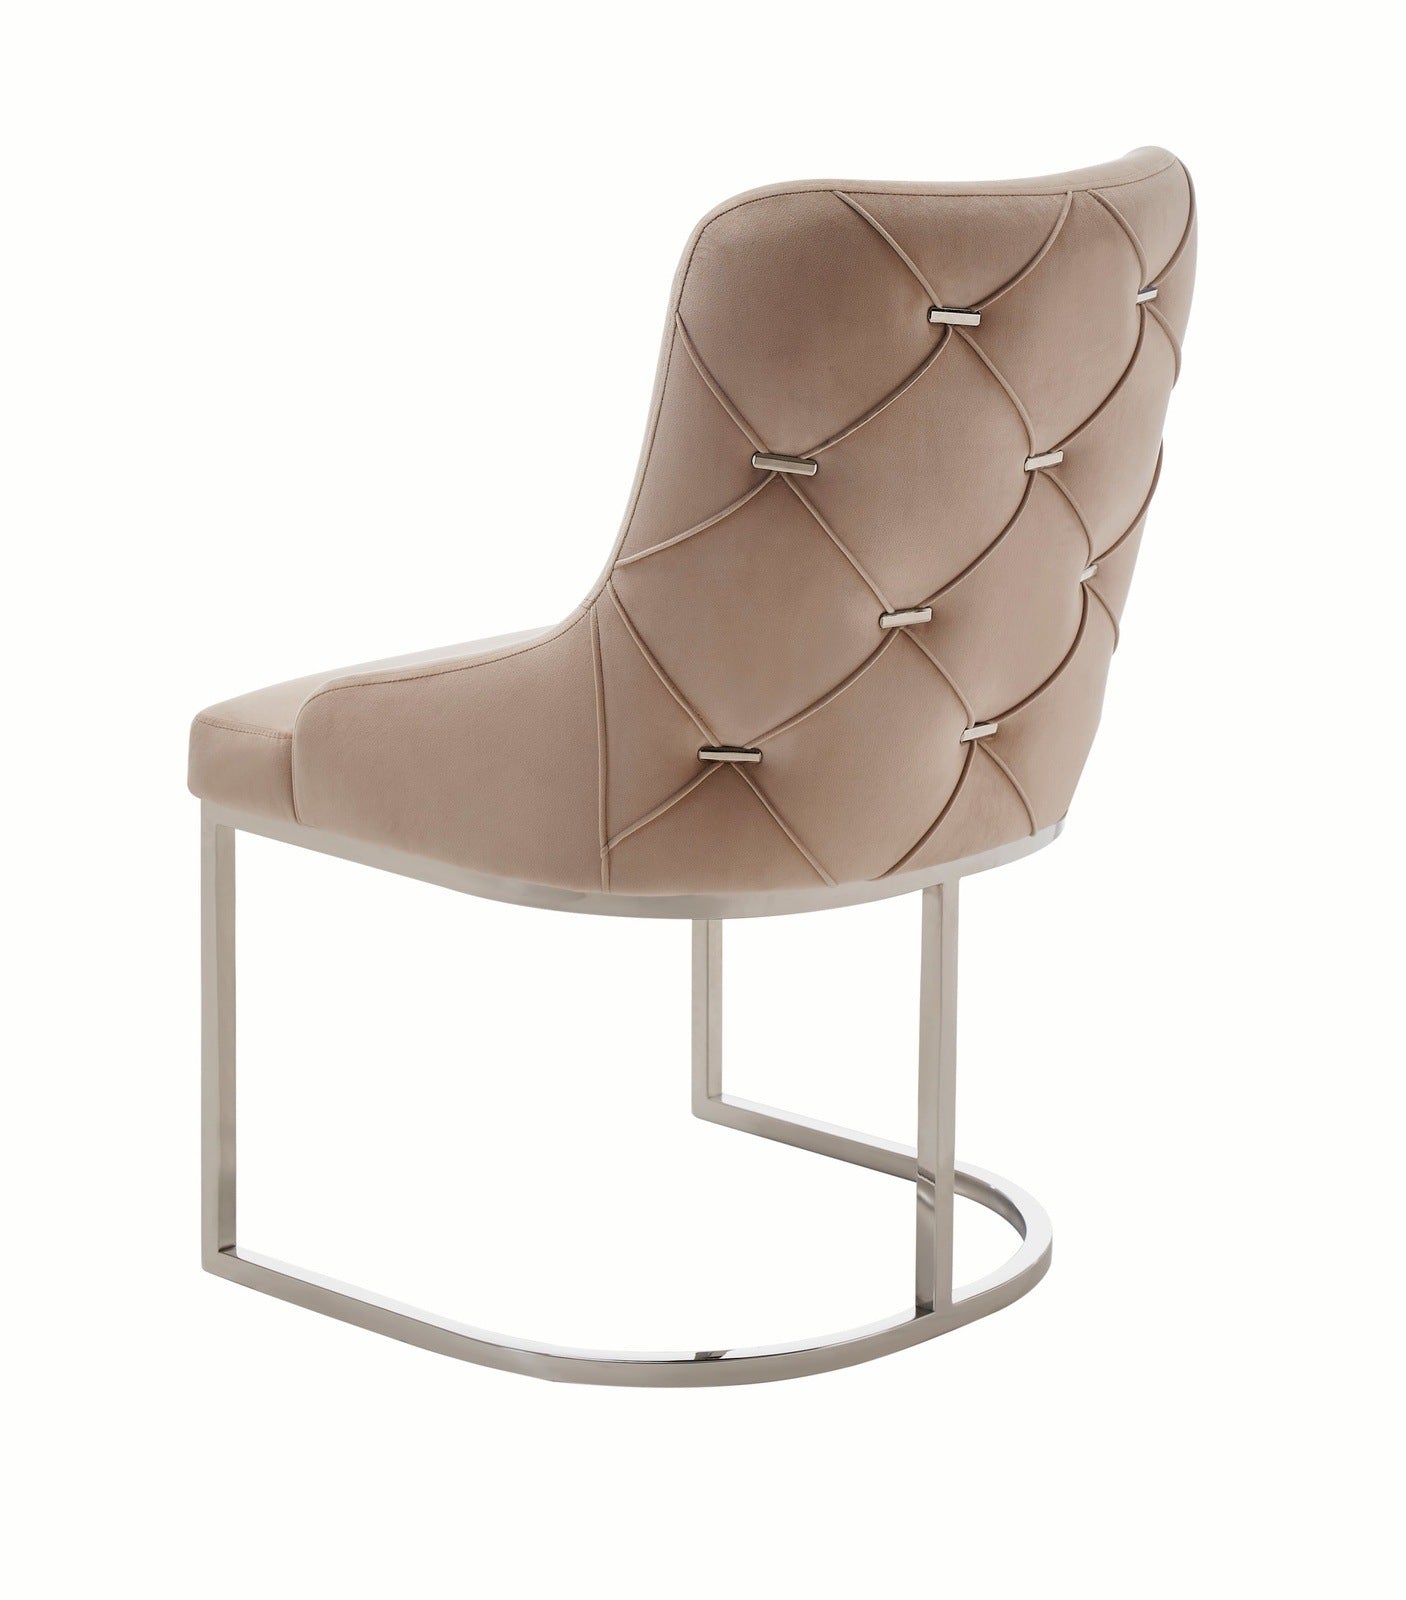 Modrest Daria Modern Beige Velvet and Stainless Steel Dining Chair Set of 2